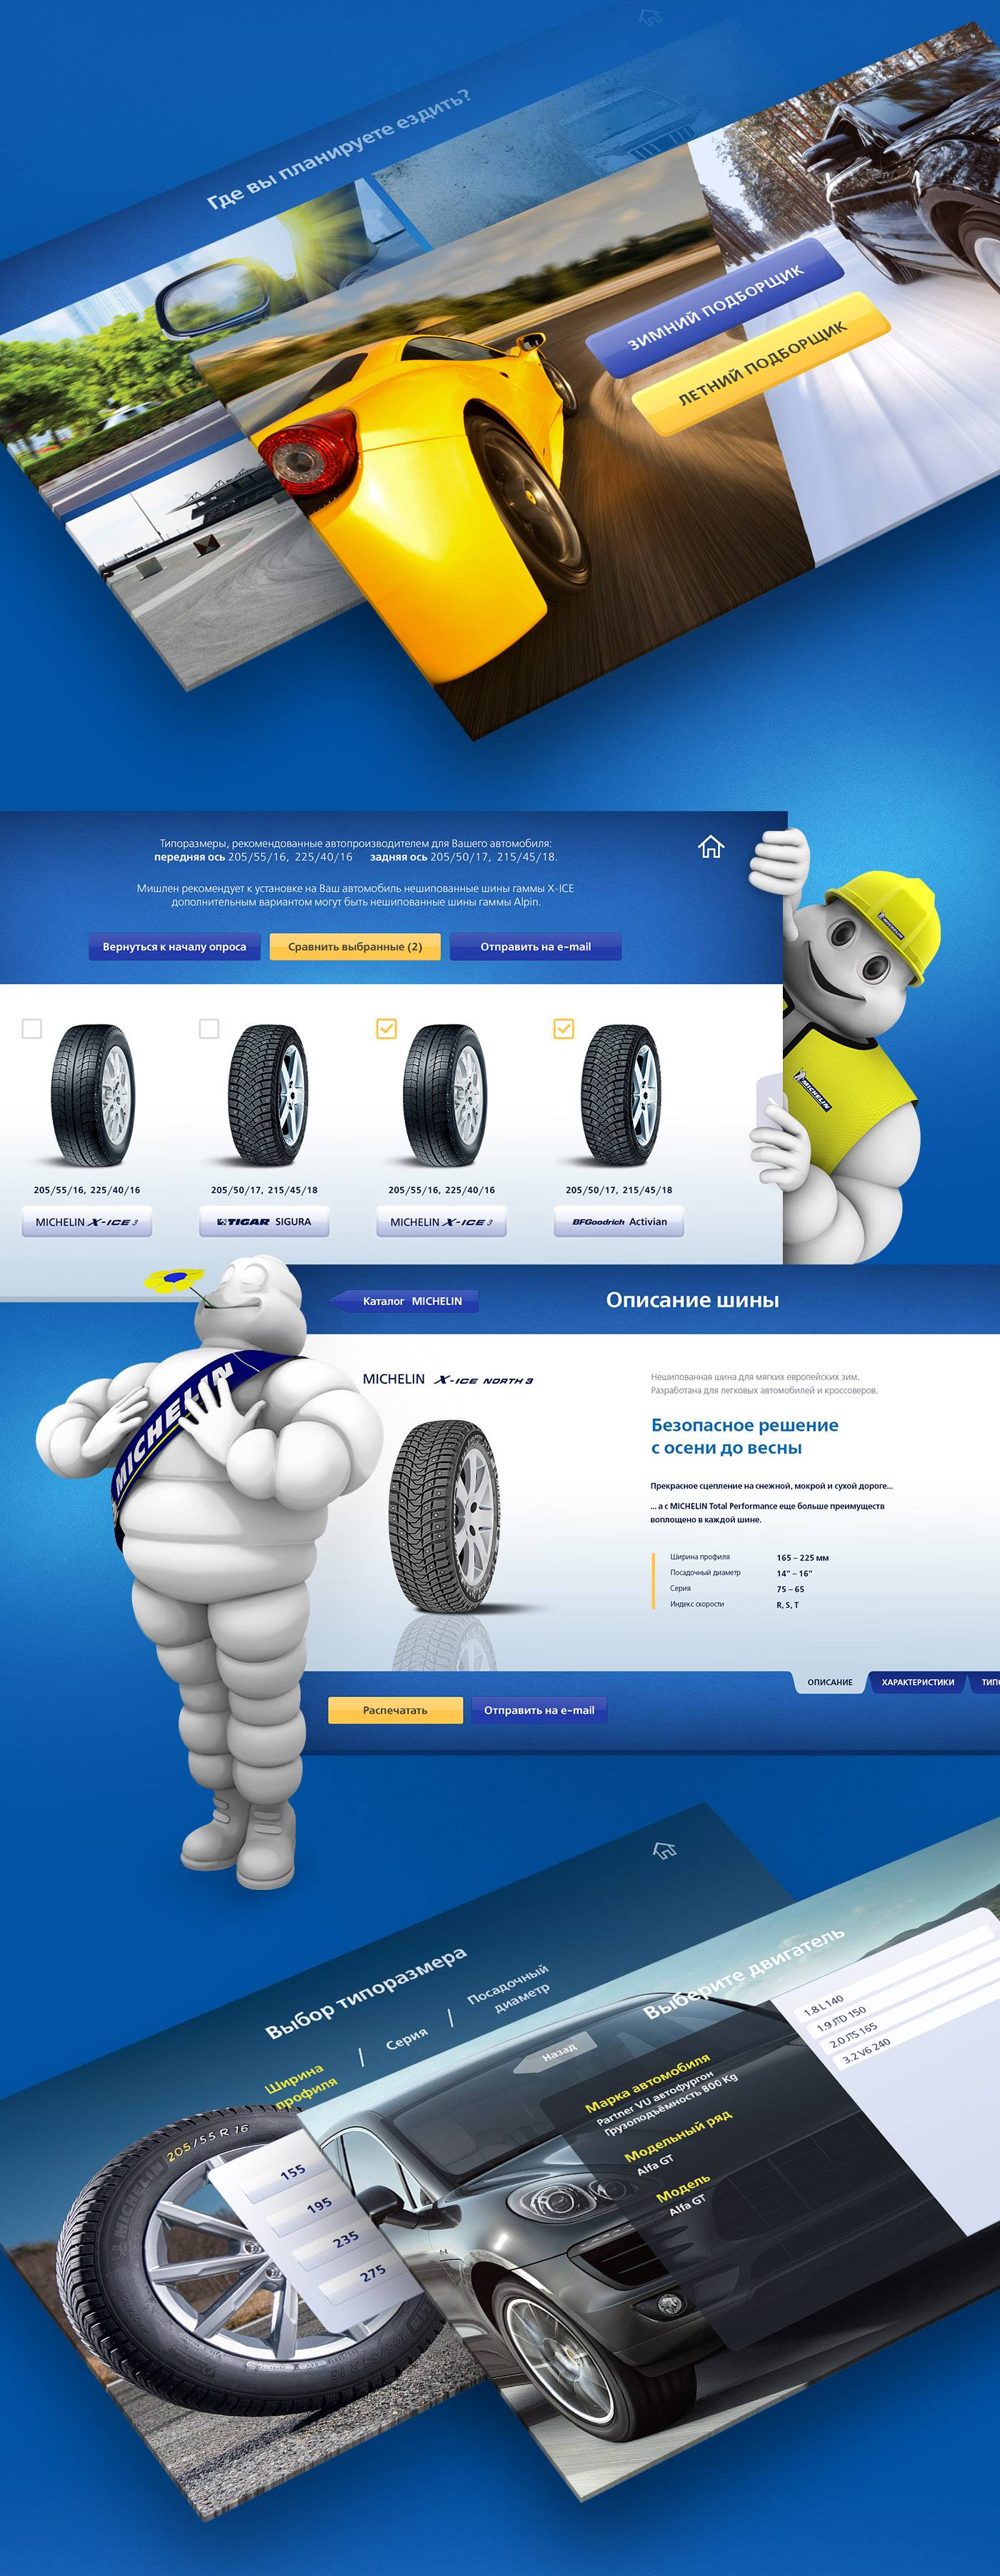 Michelin. Digital POSM_content